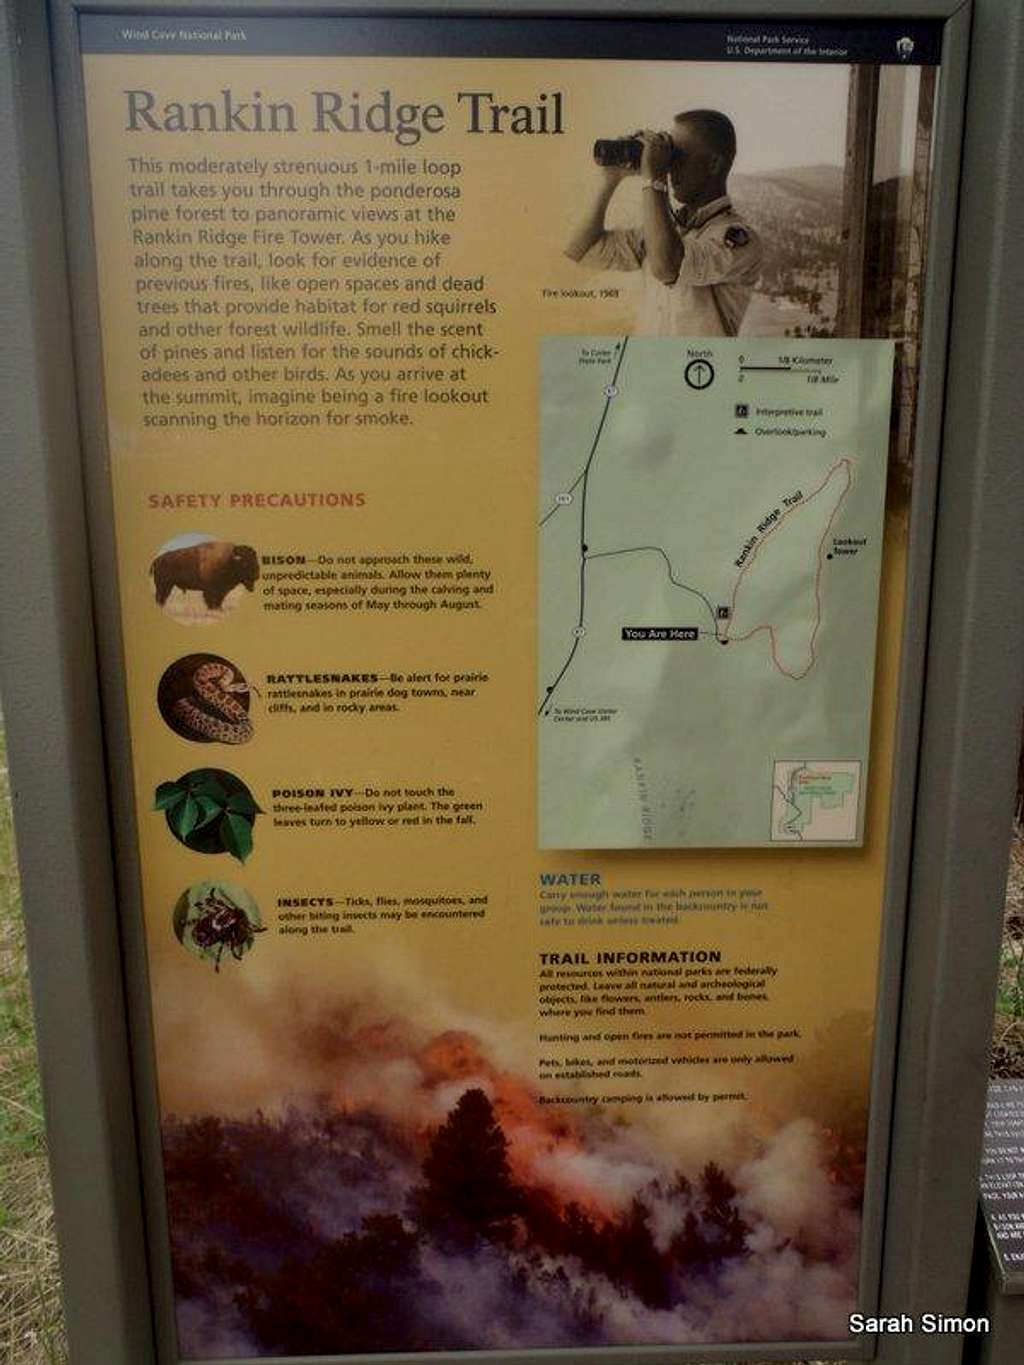 Trail Description